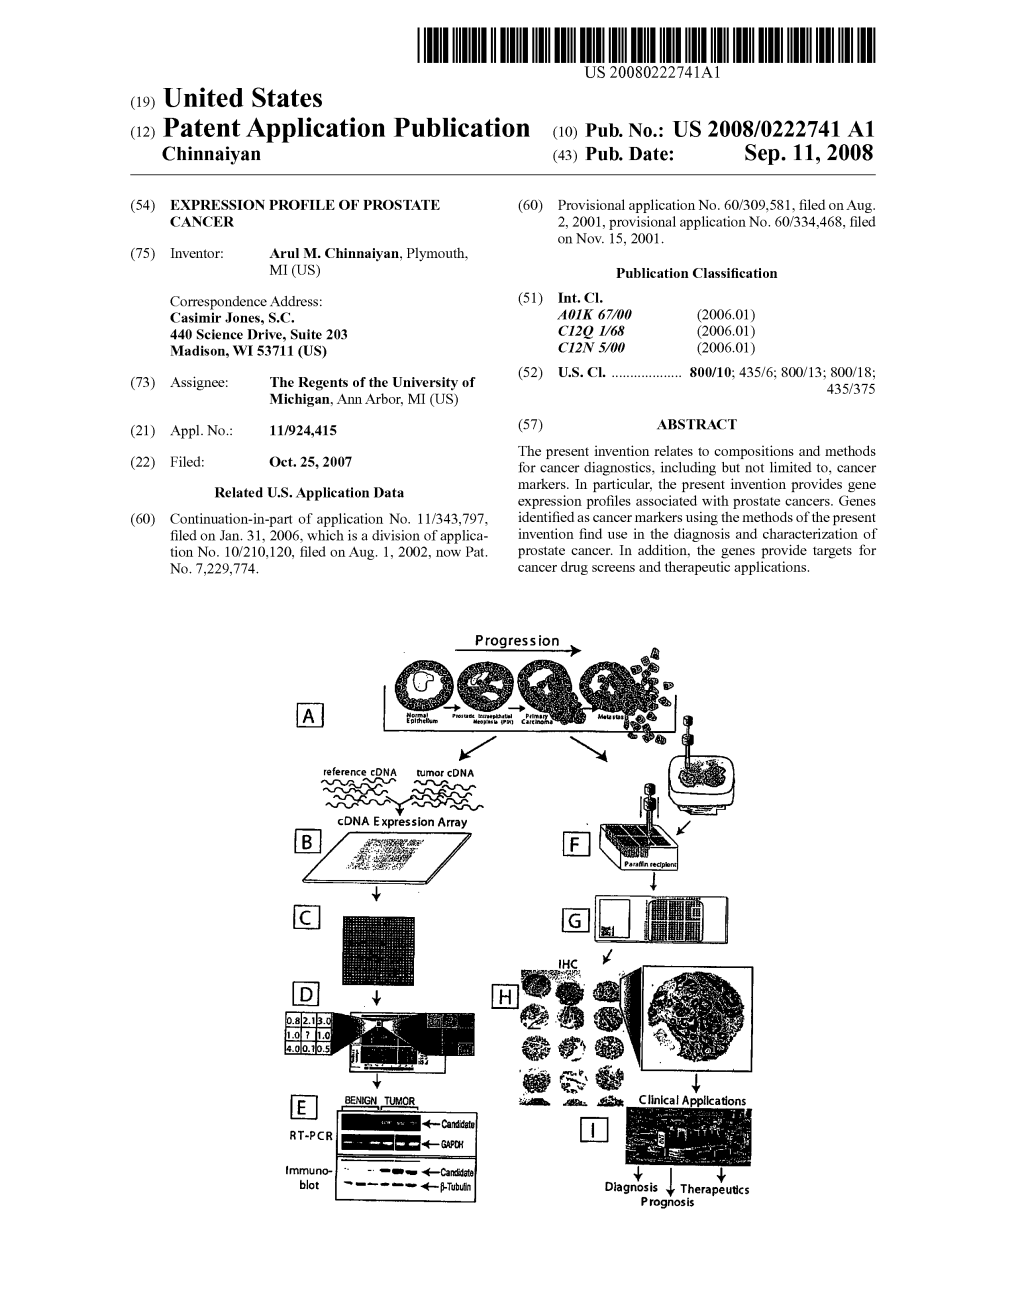 (12) Patent Application Publication (10) Pub. No.: US 2008/0222741 A1 Chinnaiyan (43) Pub